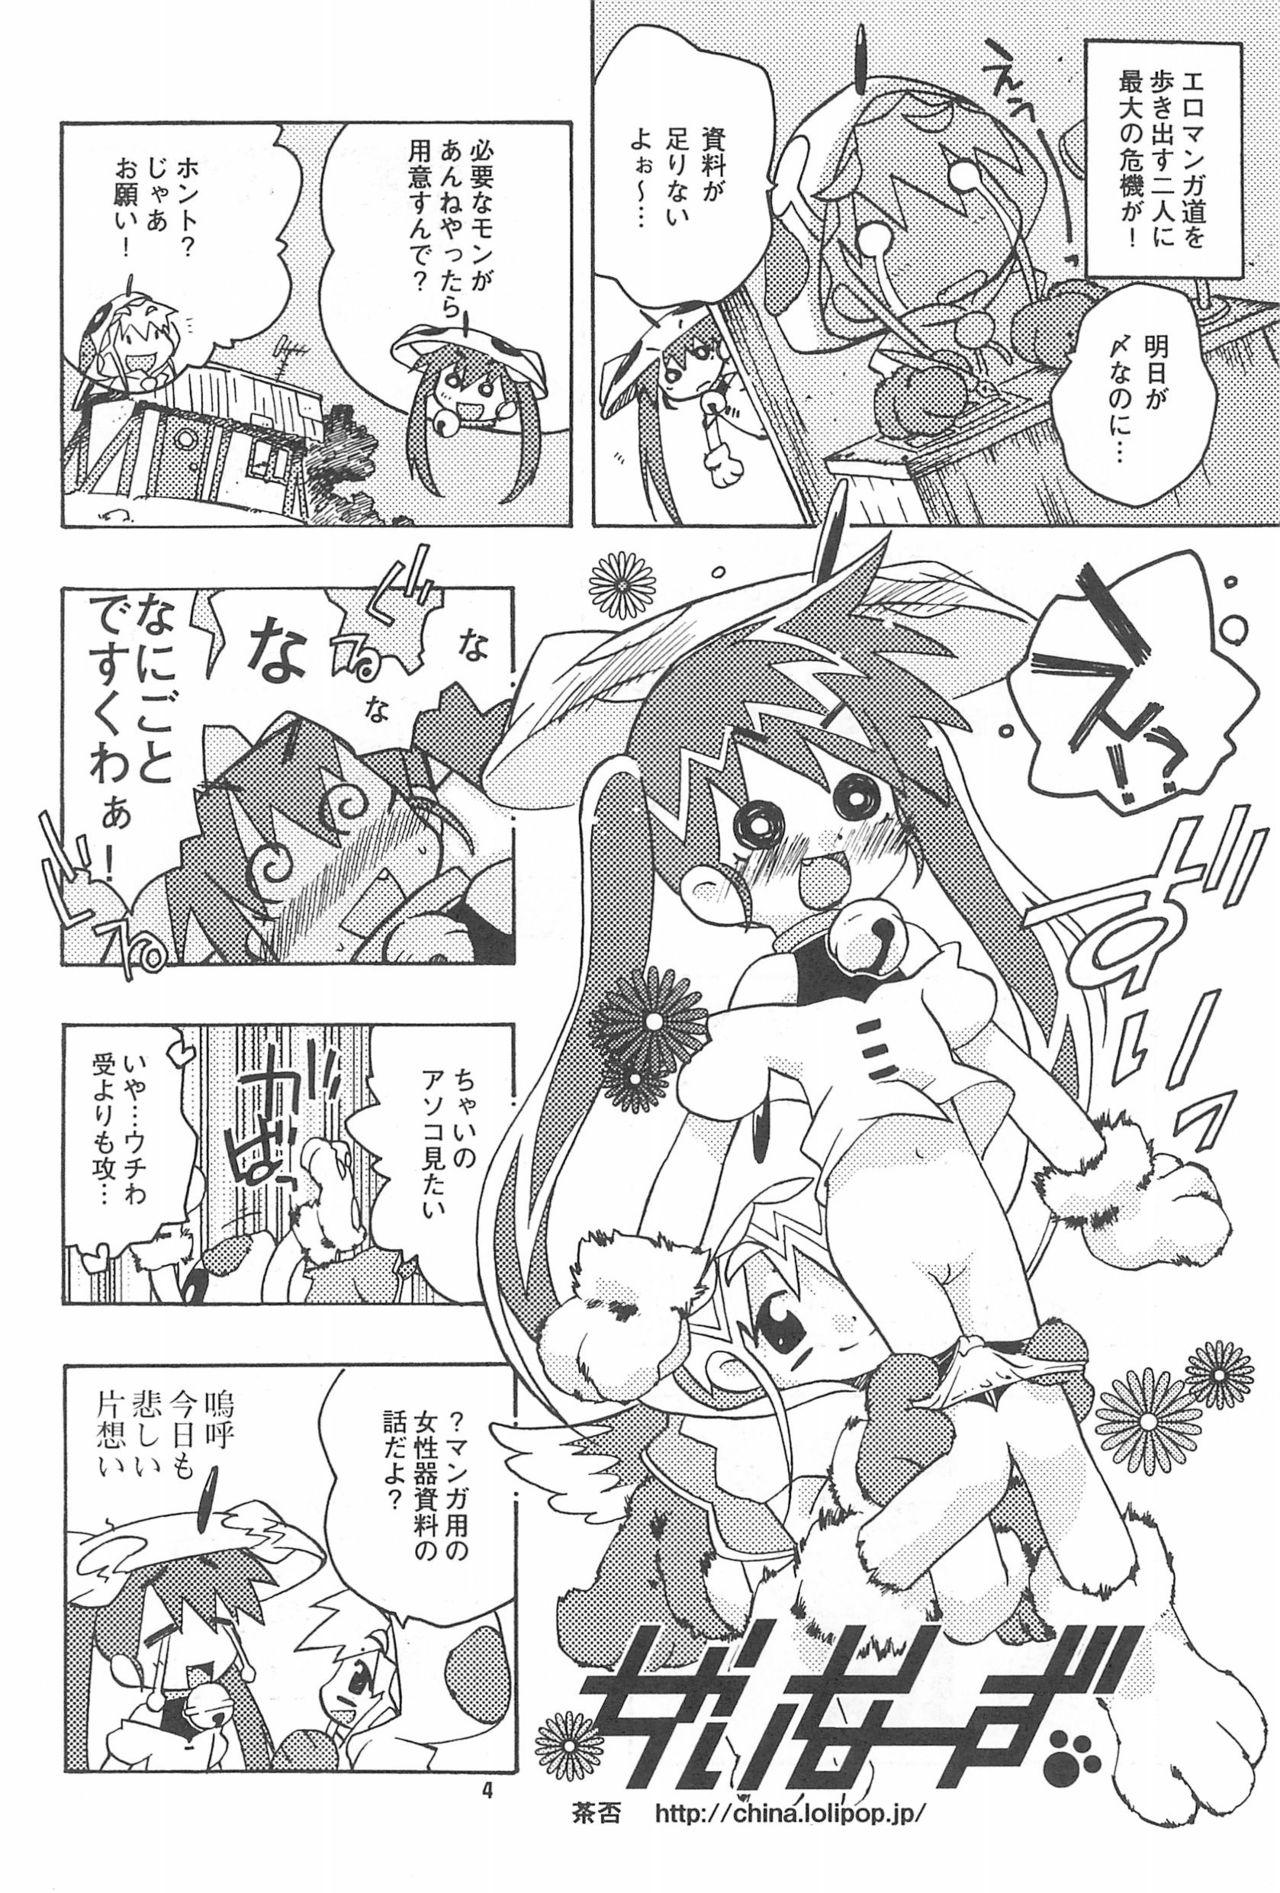 Sex Party Rokusai+2 Cam - Page 4